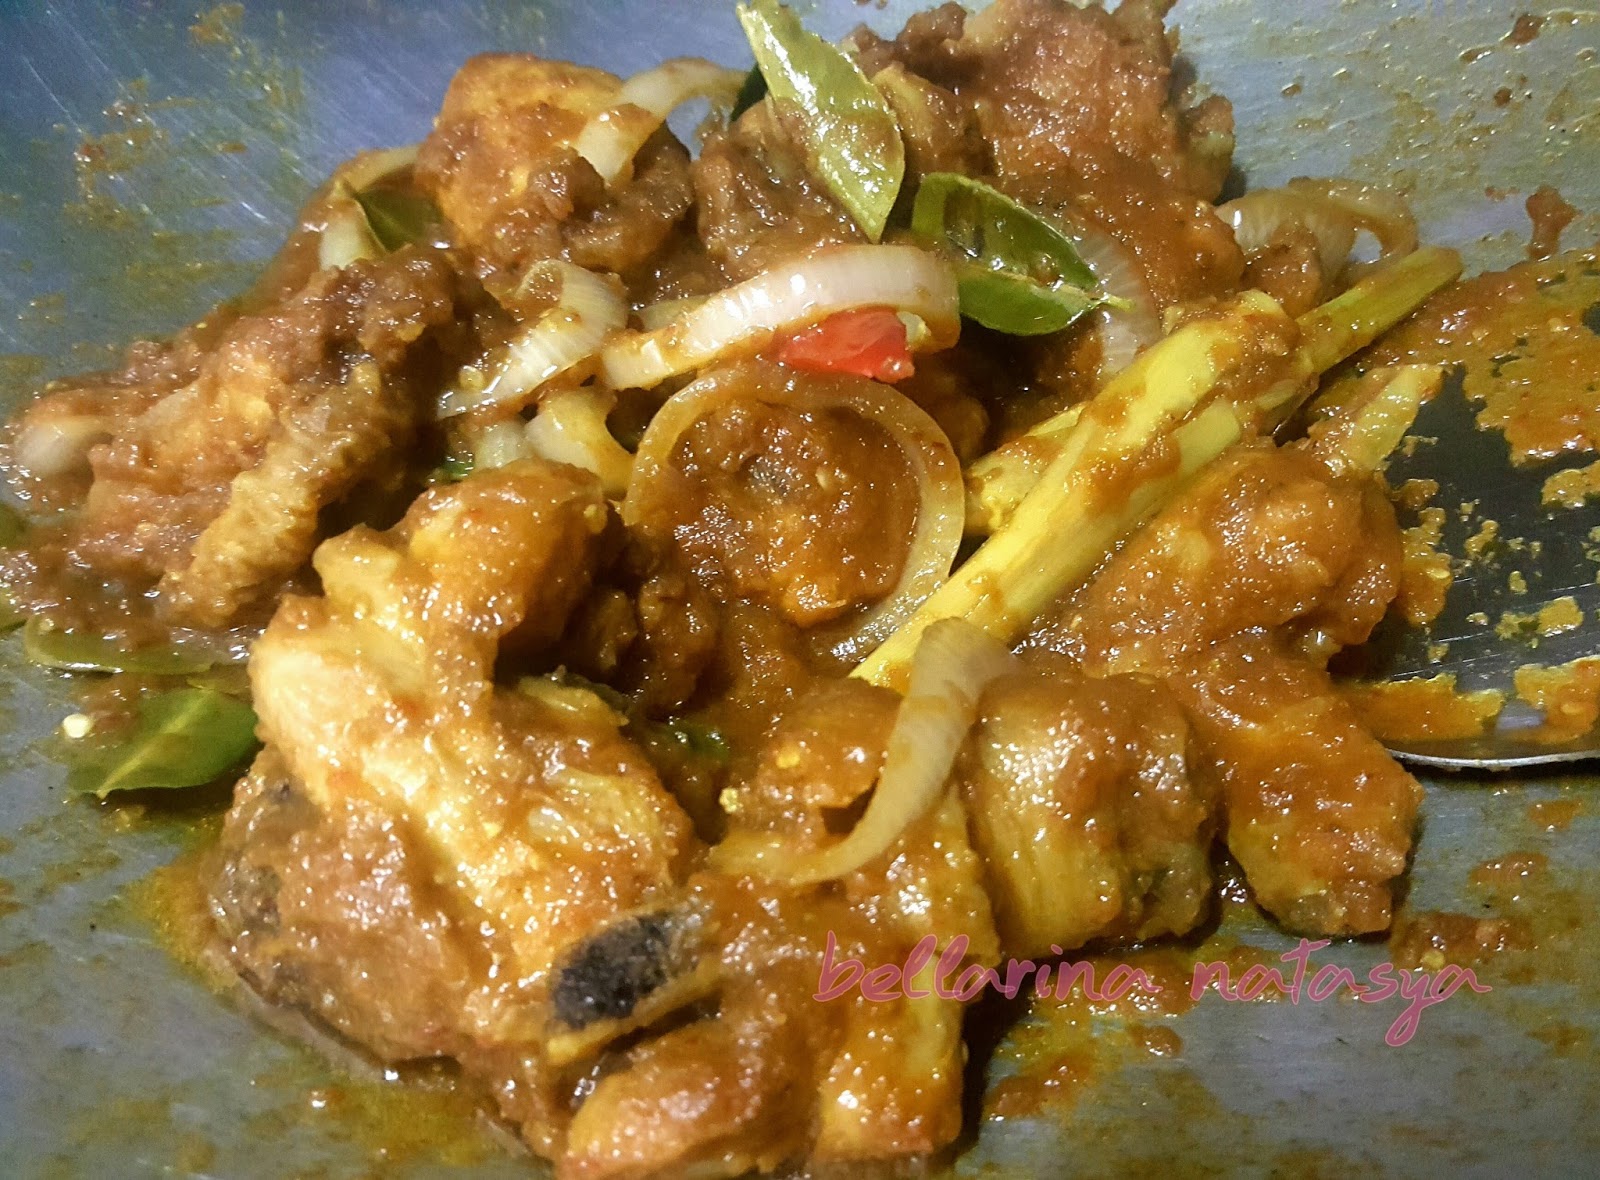 Resepi Ayam Masak Thai Simple - Ini Adalah Bellarina Natasya